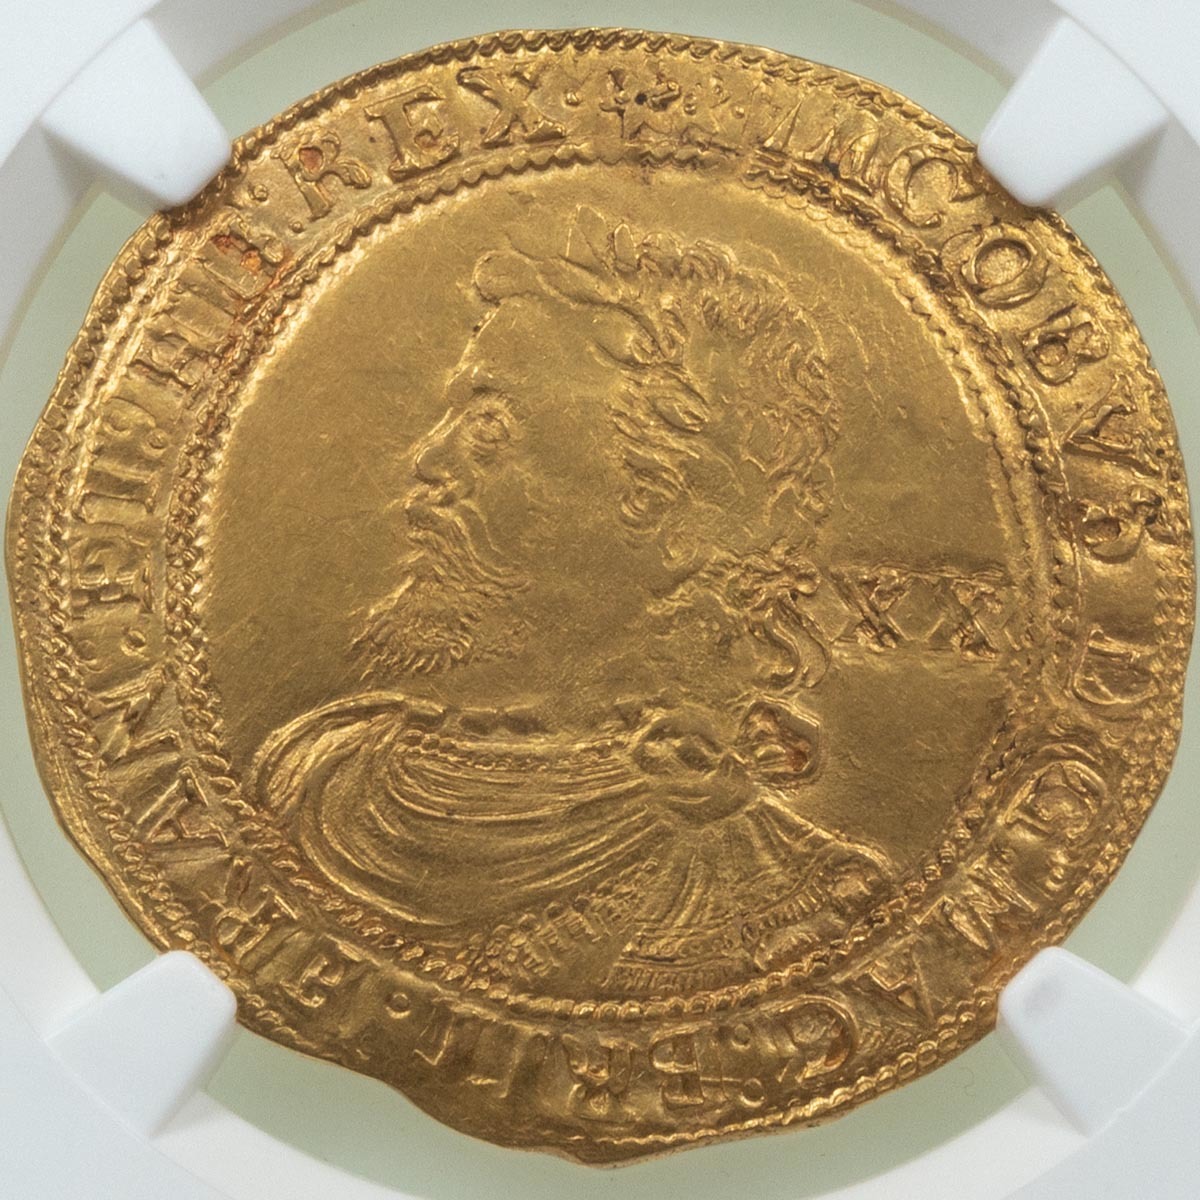 1619-1620 King James I Hammered Gold Laurel Coin NGC Graded MS 62 Obverse